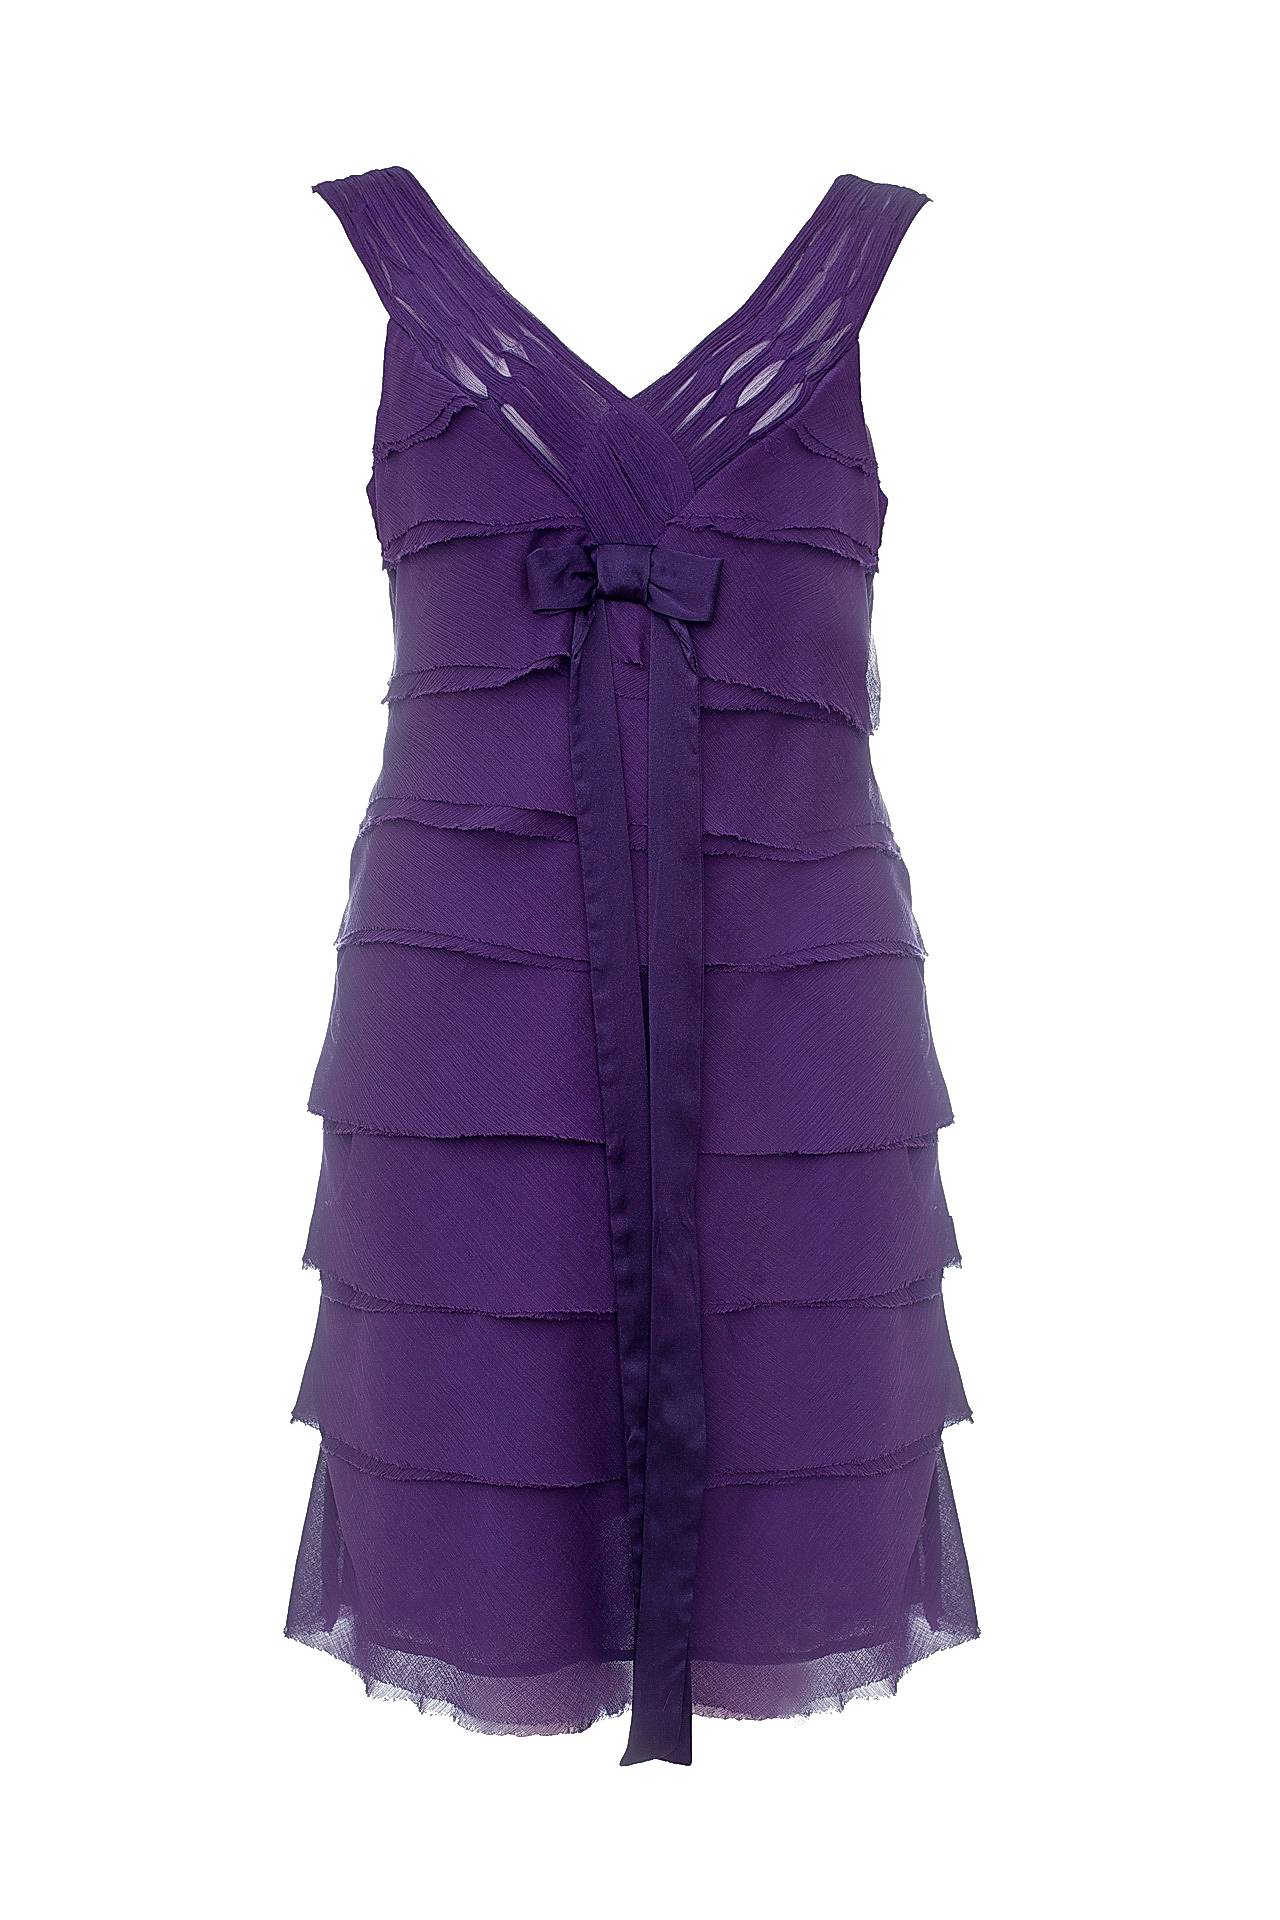 Одежда женская Платье NOUGAT LONDON (NL1308/11.2). Купить за 11960 руб.